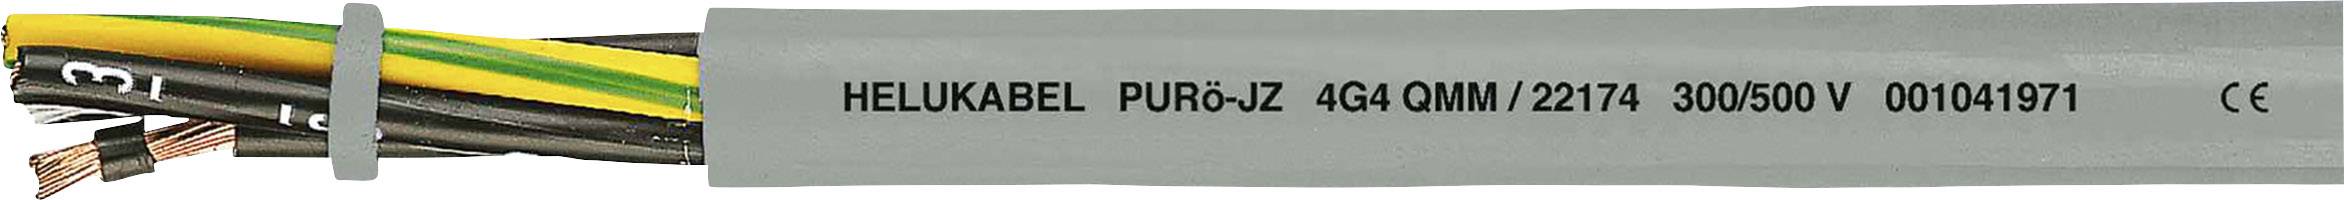 HELUKABEL PURö-JZ Steuerleitung 5 G 0.50 mm² Grau 22103-1000 1000 m